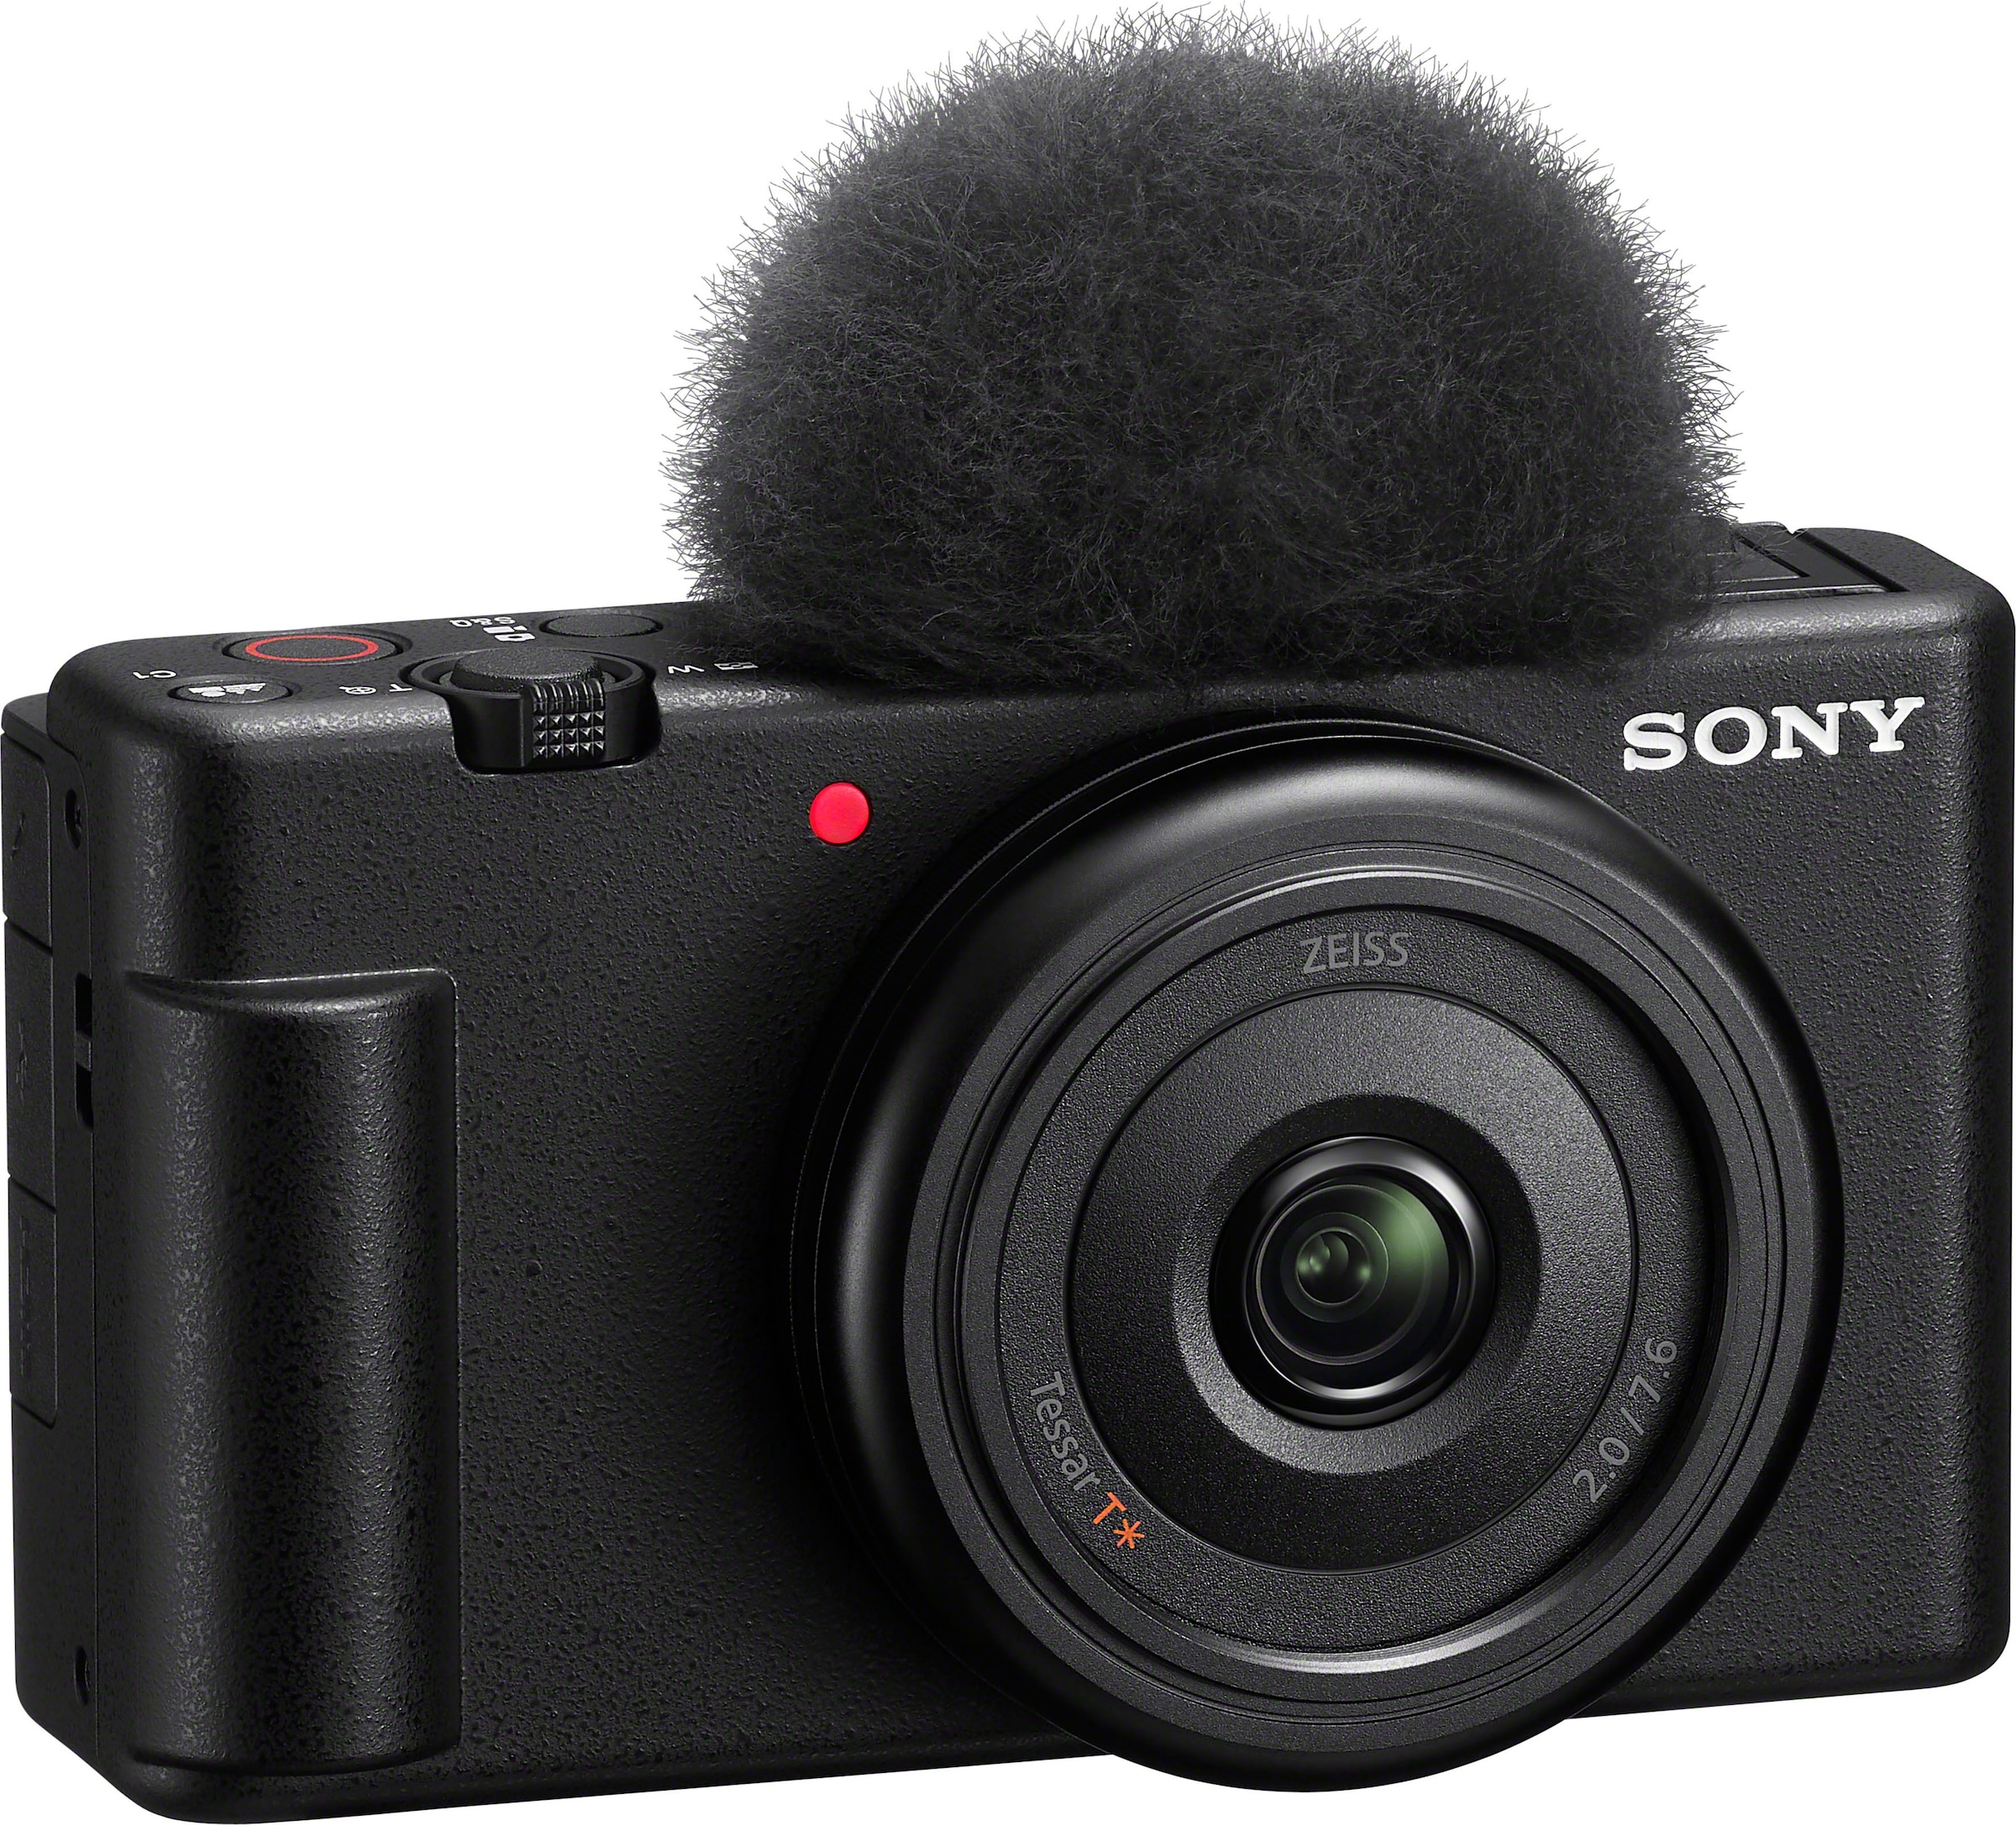 Sony »ZV-1F«, 6 Gruppen, bei Objektiv, 6 Elemente ZEISS MP, Bluetooth-WLAN in T* Tessar Kompaktkamera 20,1